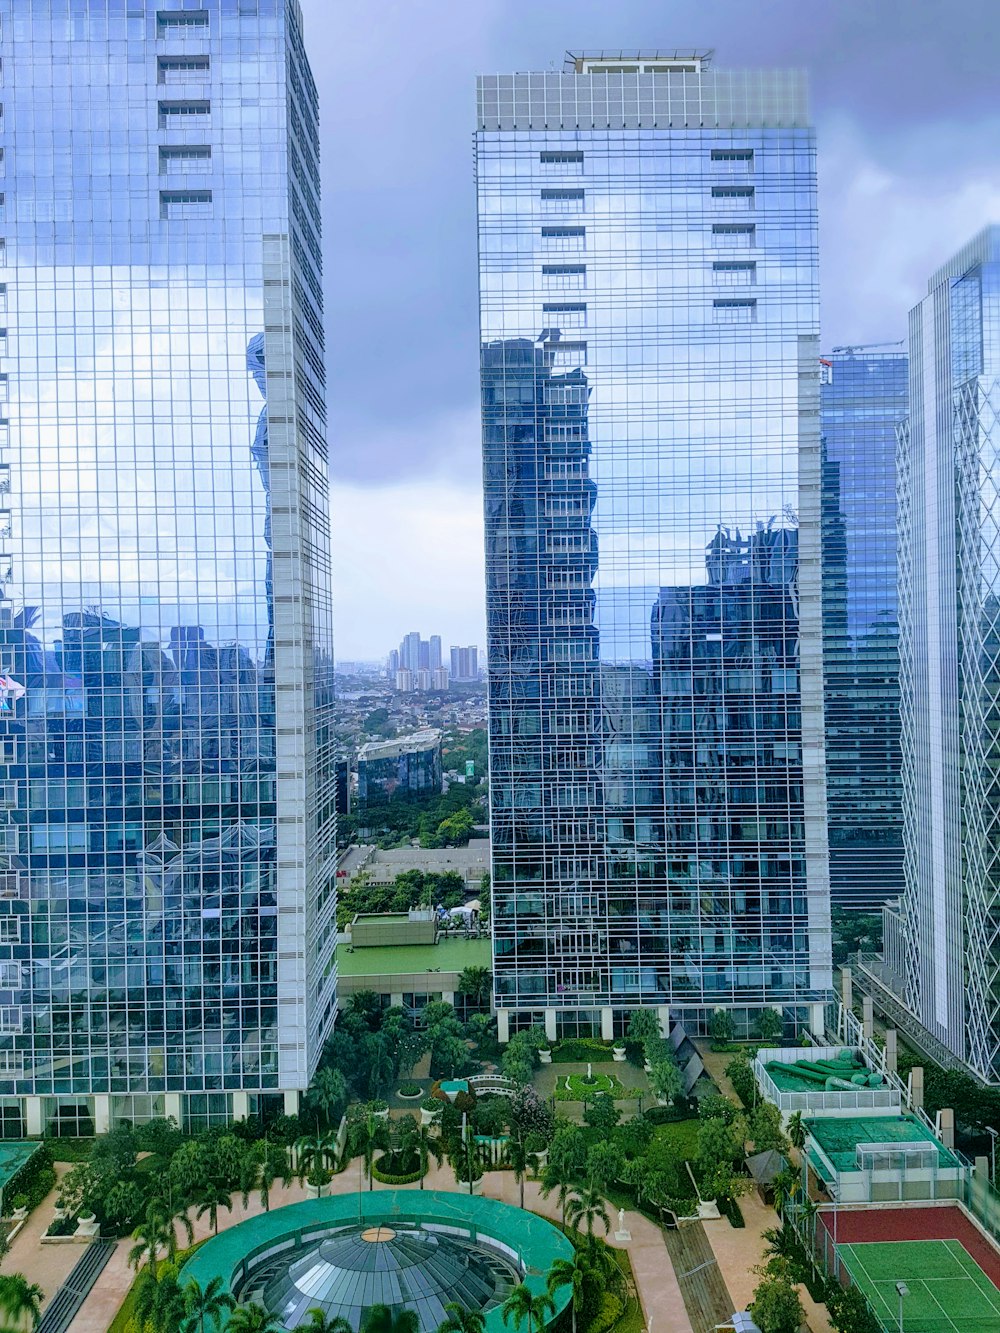 Photographie aérienne de la ville avec des immeubles de grande hauteur sous un ciel bleu et blanc pendant la journée